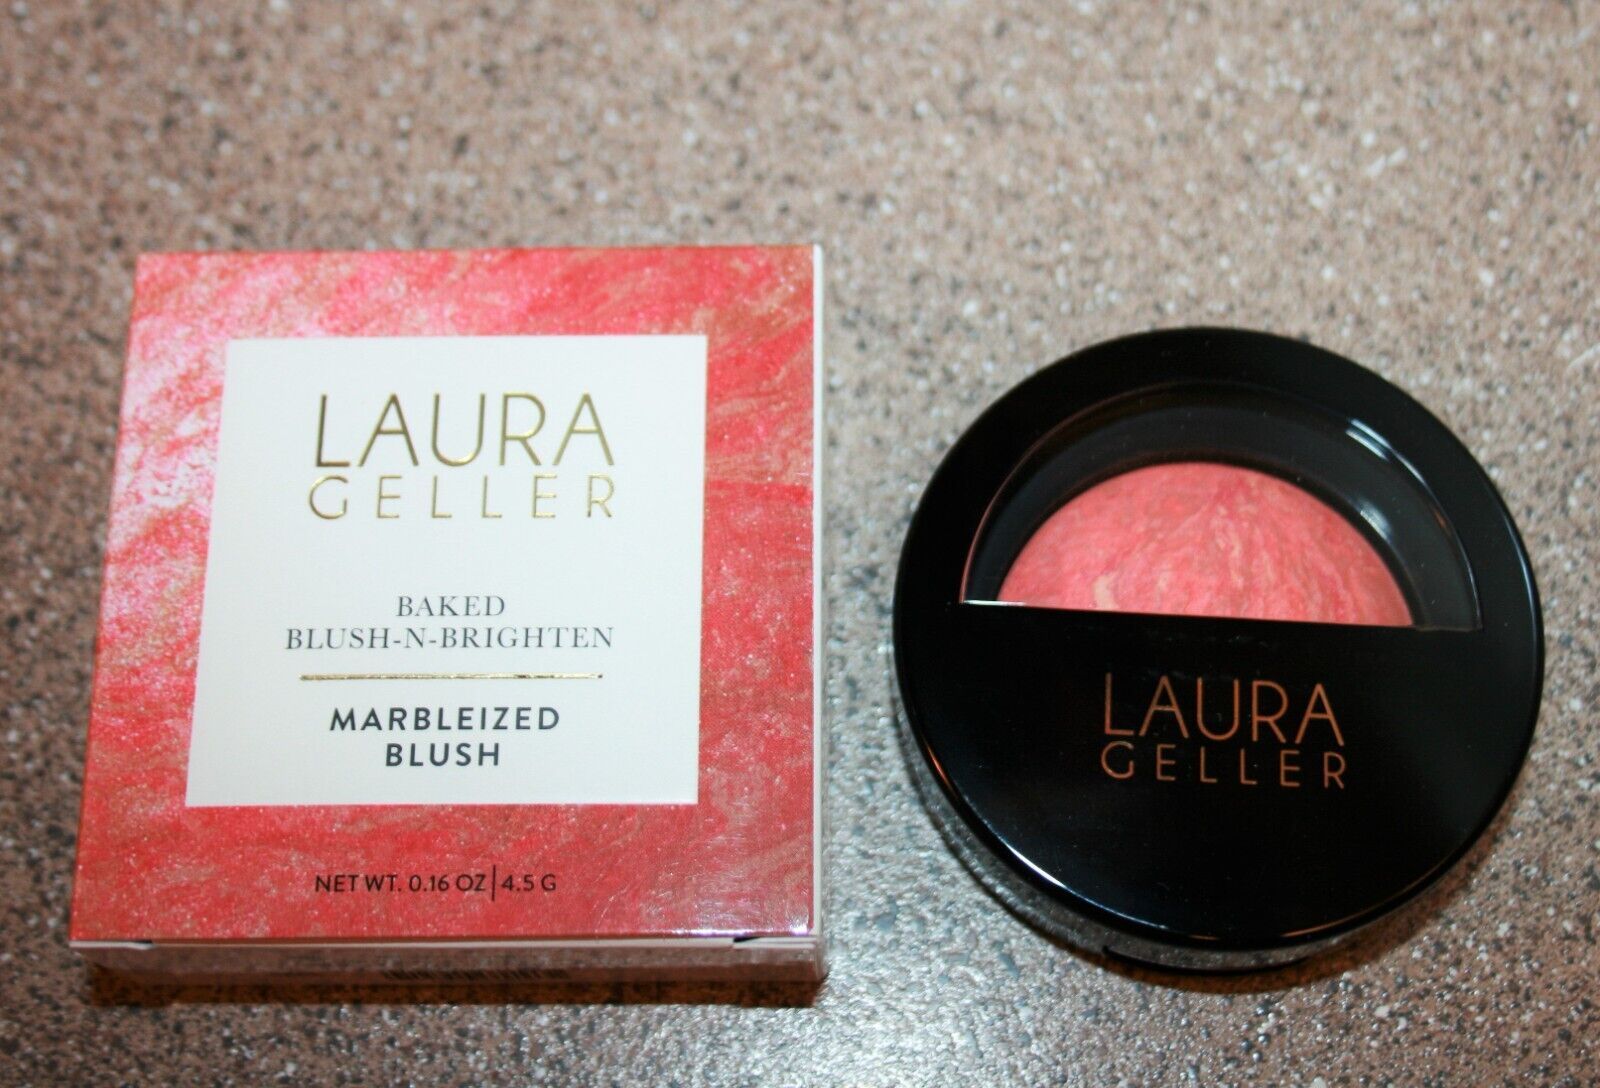 Laura Geller Baked Blush-N-Brighten Marbleized Blush STARFISH ISLAND 0.16oz 4.5g